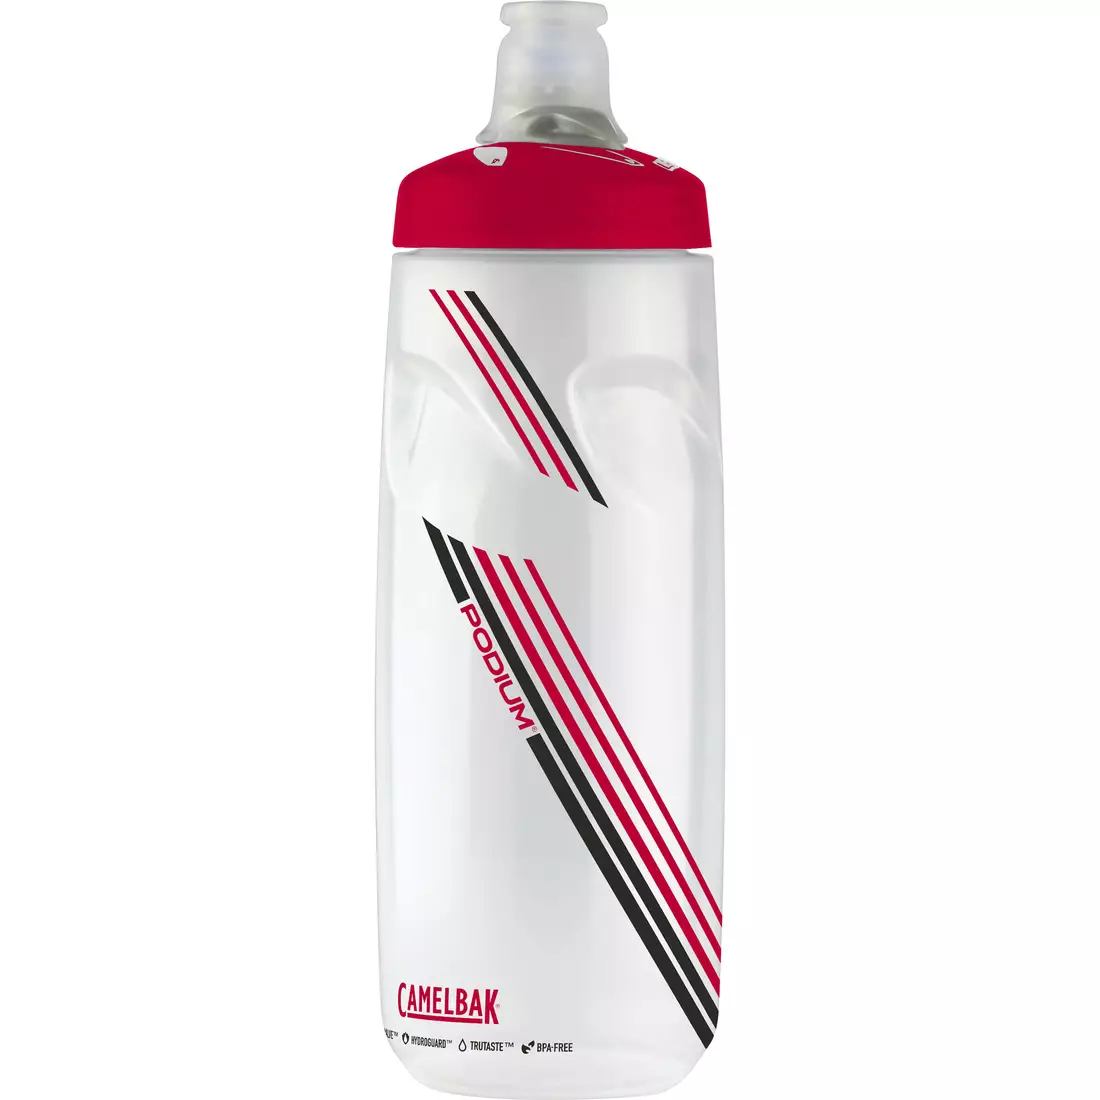 Camelbak SS18 Podium kerékpáros vizes palack 24oz/ 710 ml Clear Red